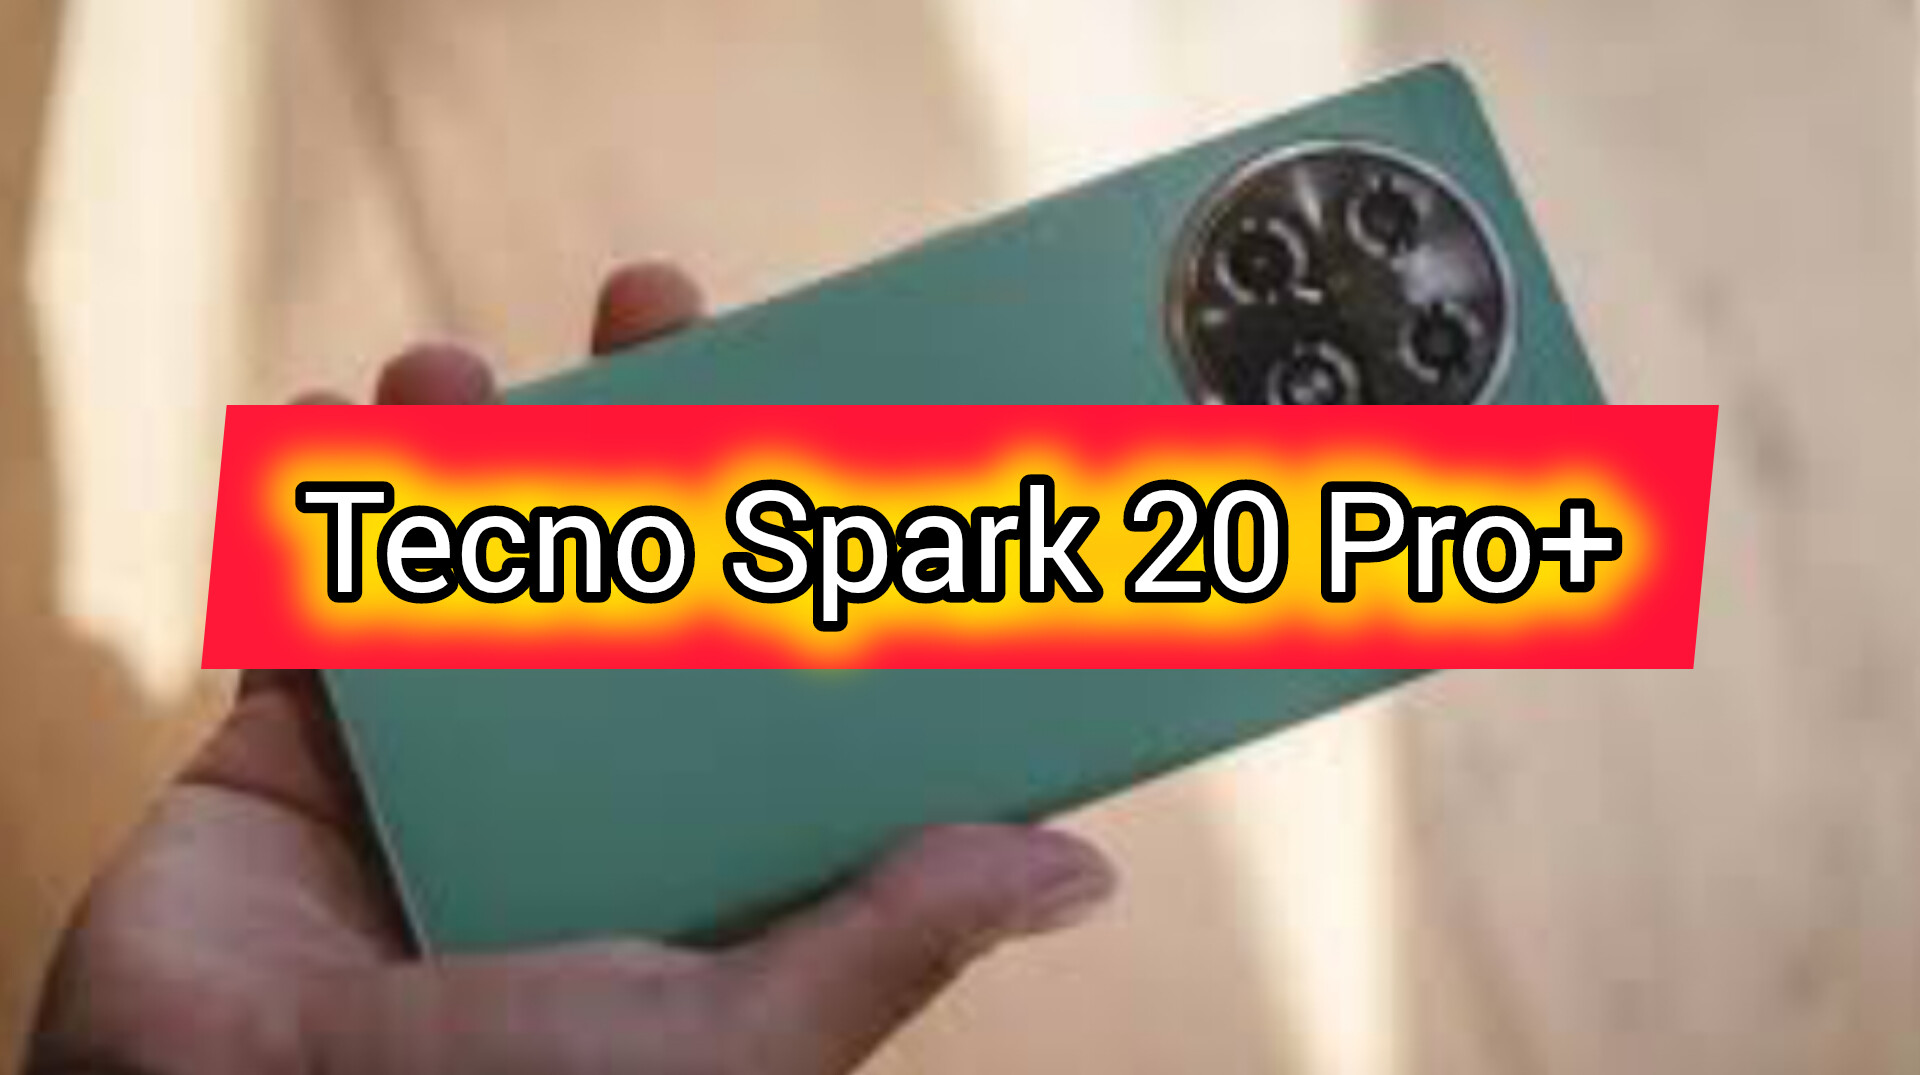 Ini 5 Keunggulan Smartphone Tecno Spark 20 Pro+ yang Tampil Dengan Varian Warna Baru, Layak Dibeli